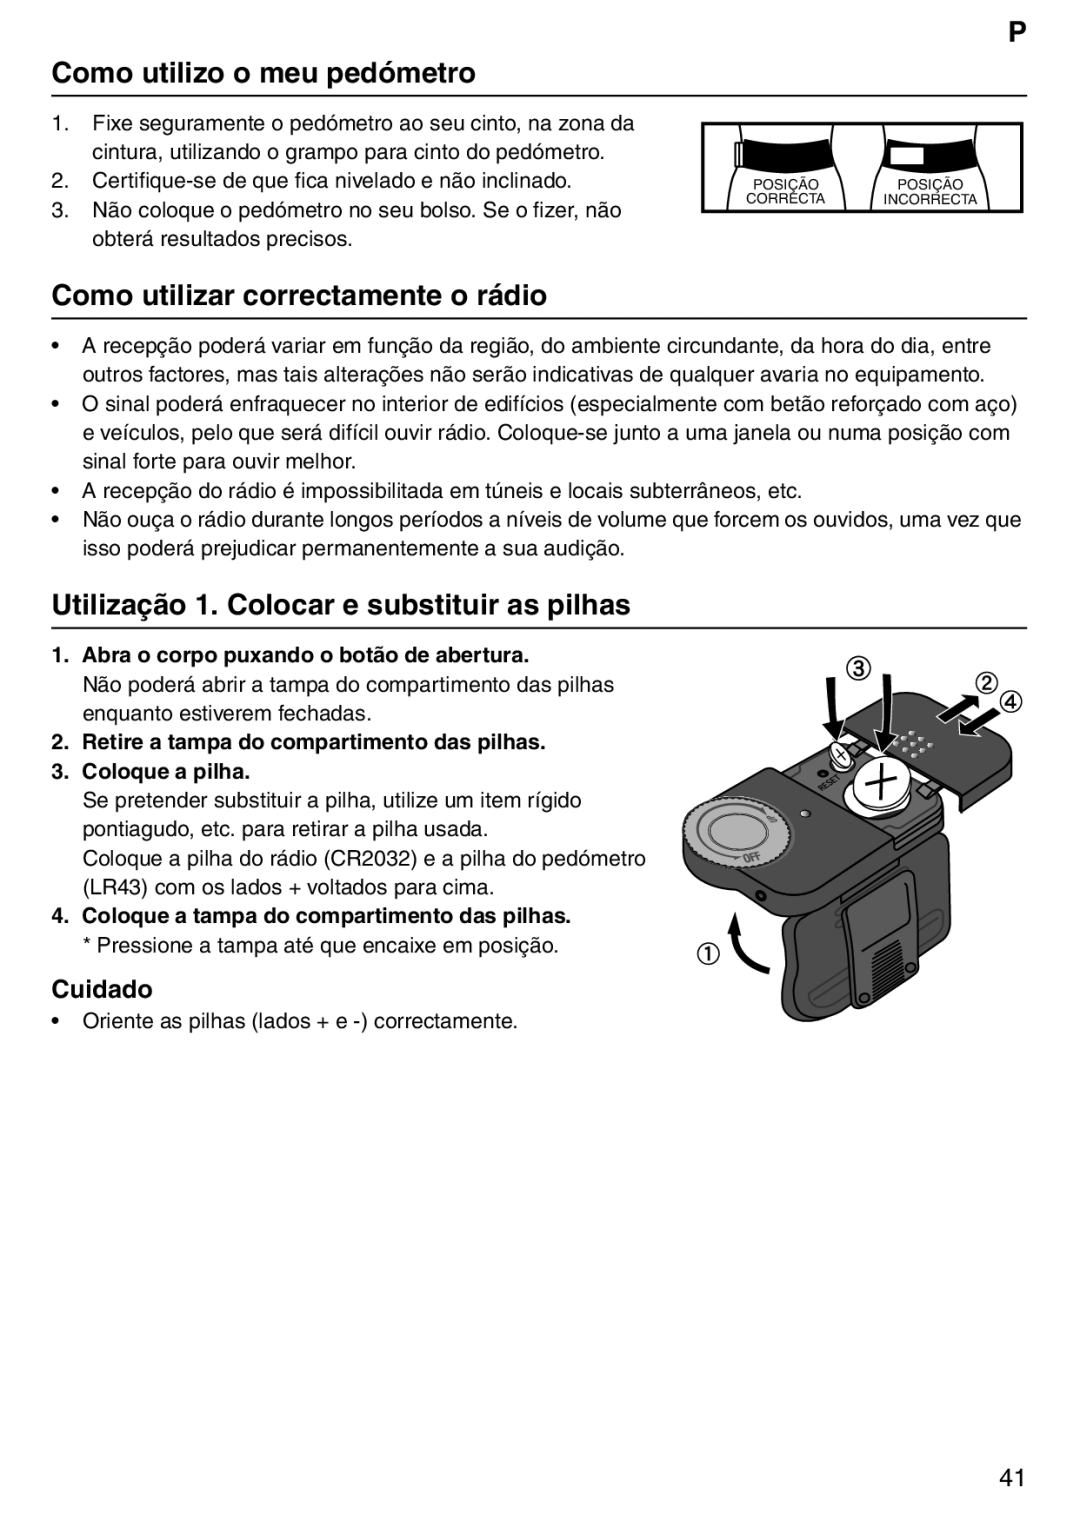 Tanita PD640 P Como utilizo o meu pedómetro, Como utilizar correctamente o rádio, Abra o corpo puxando o botão de abertura 